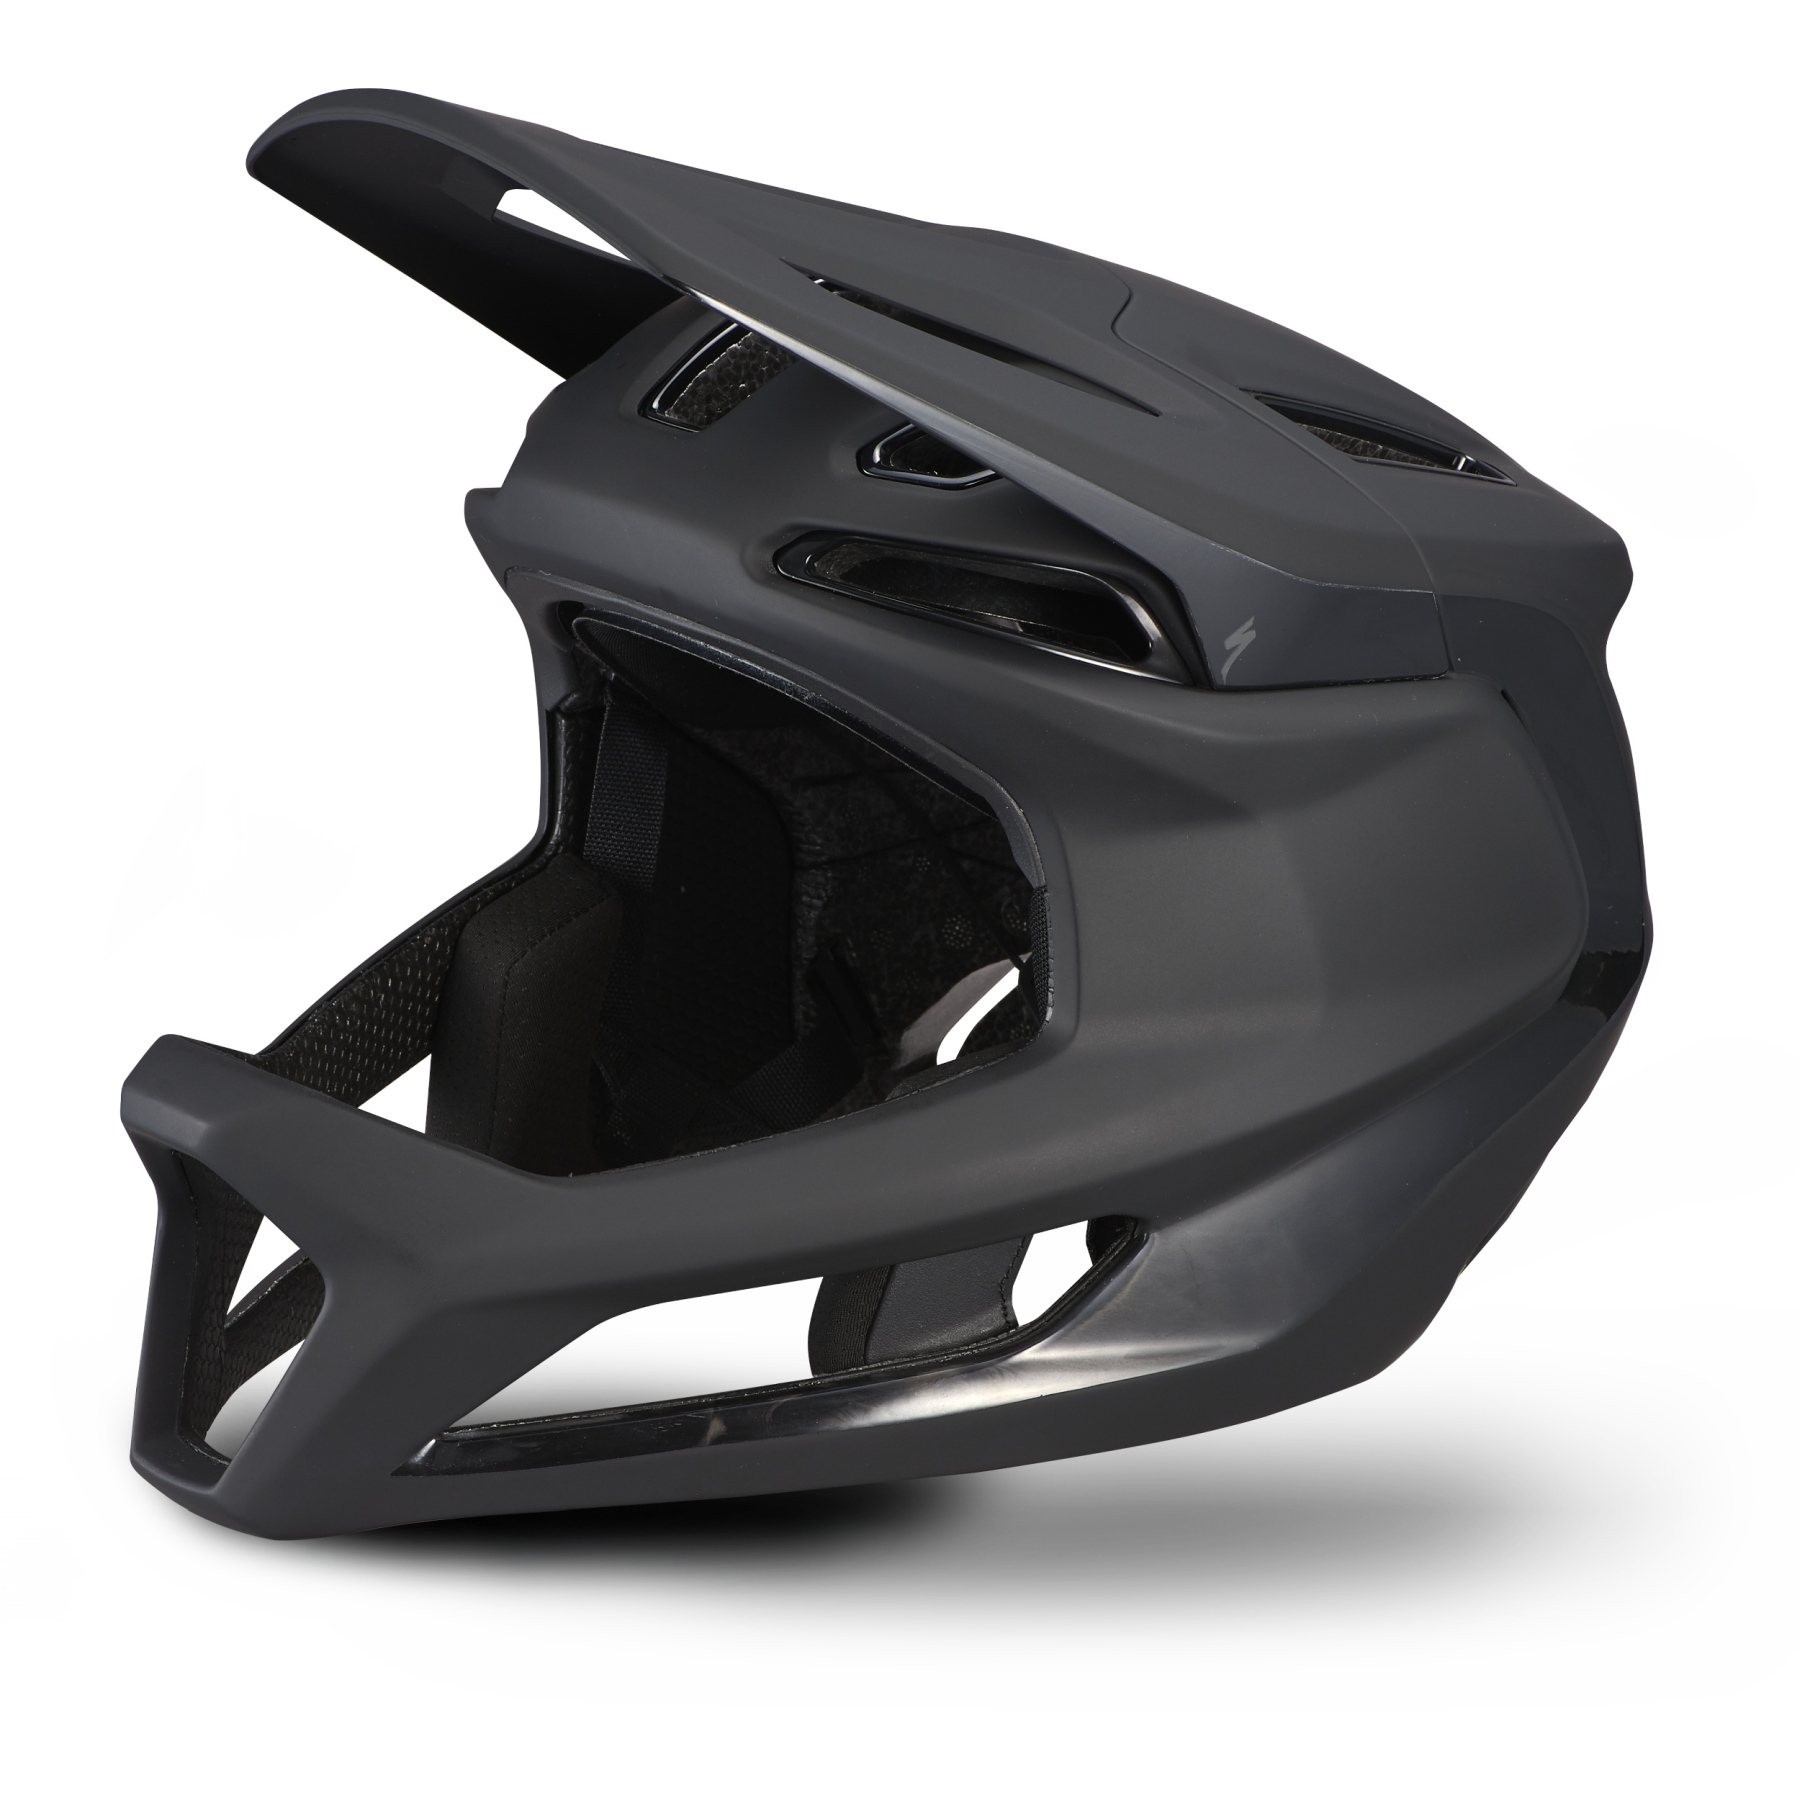 Productfoto van Specialized Gambit Full Face Helm - Zwart